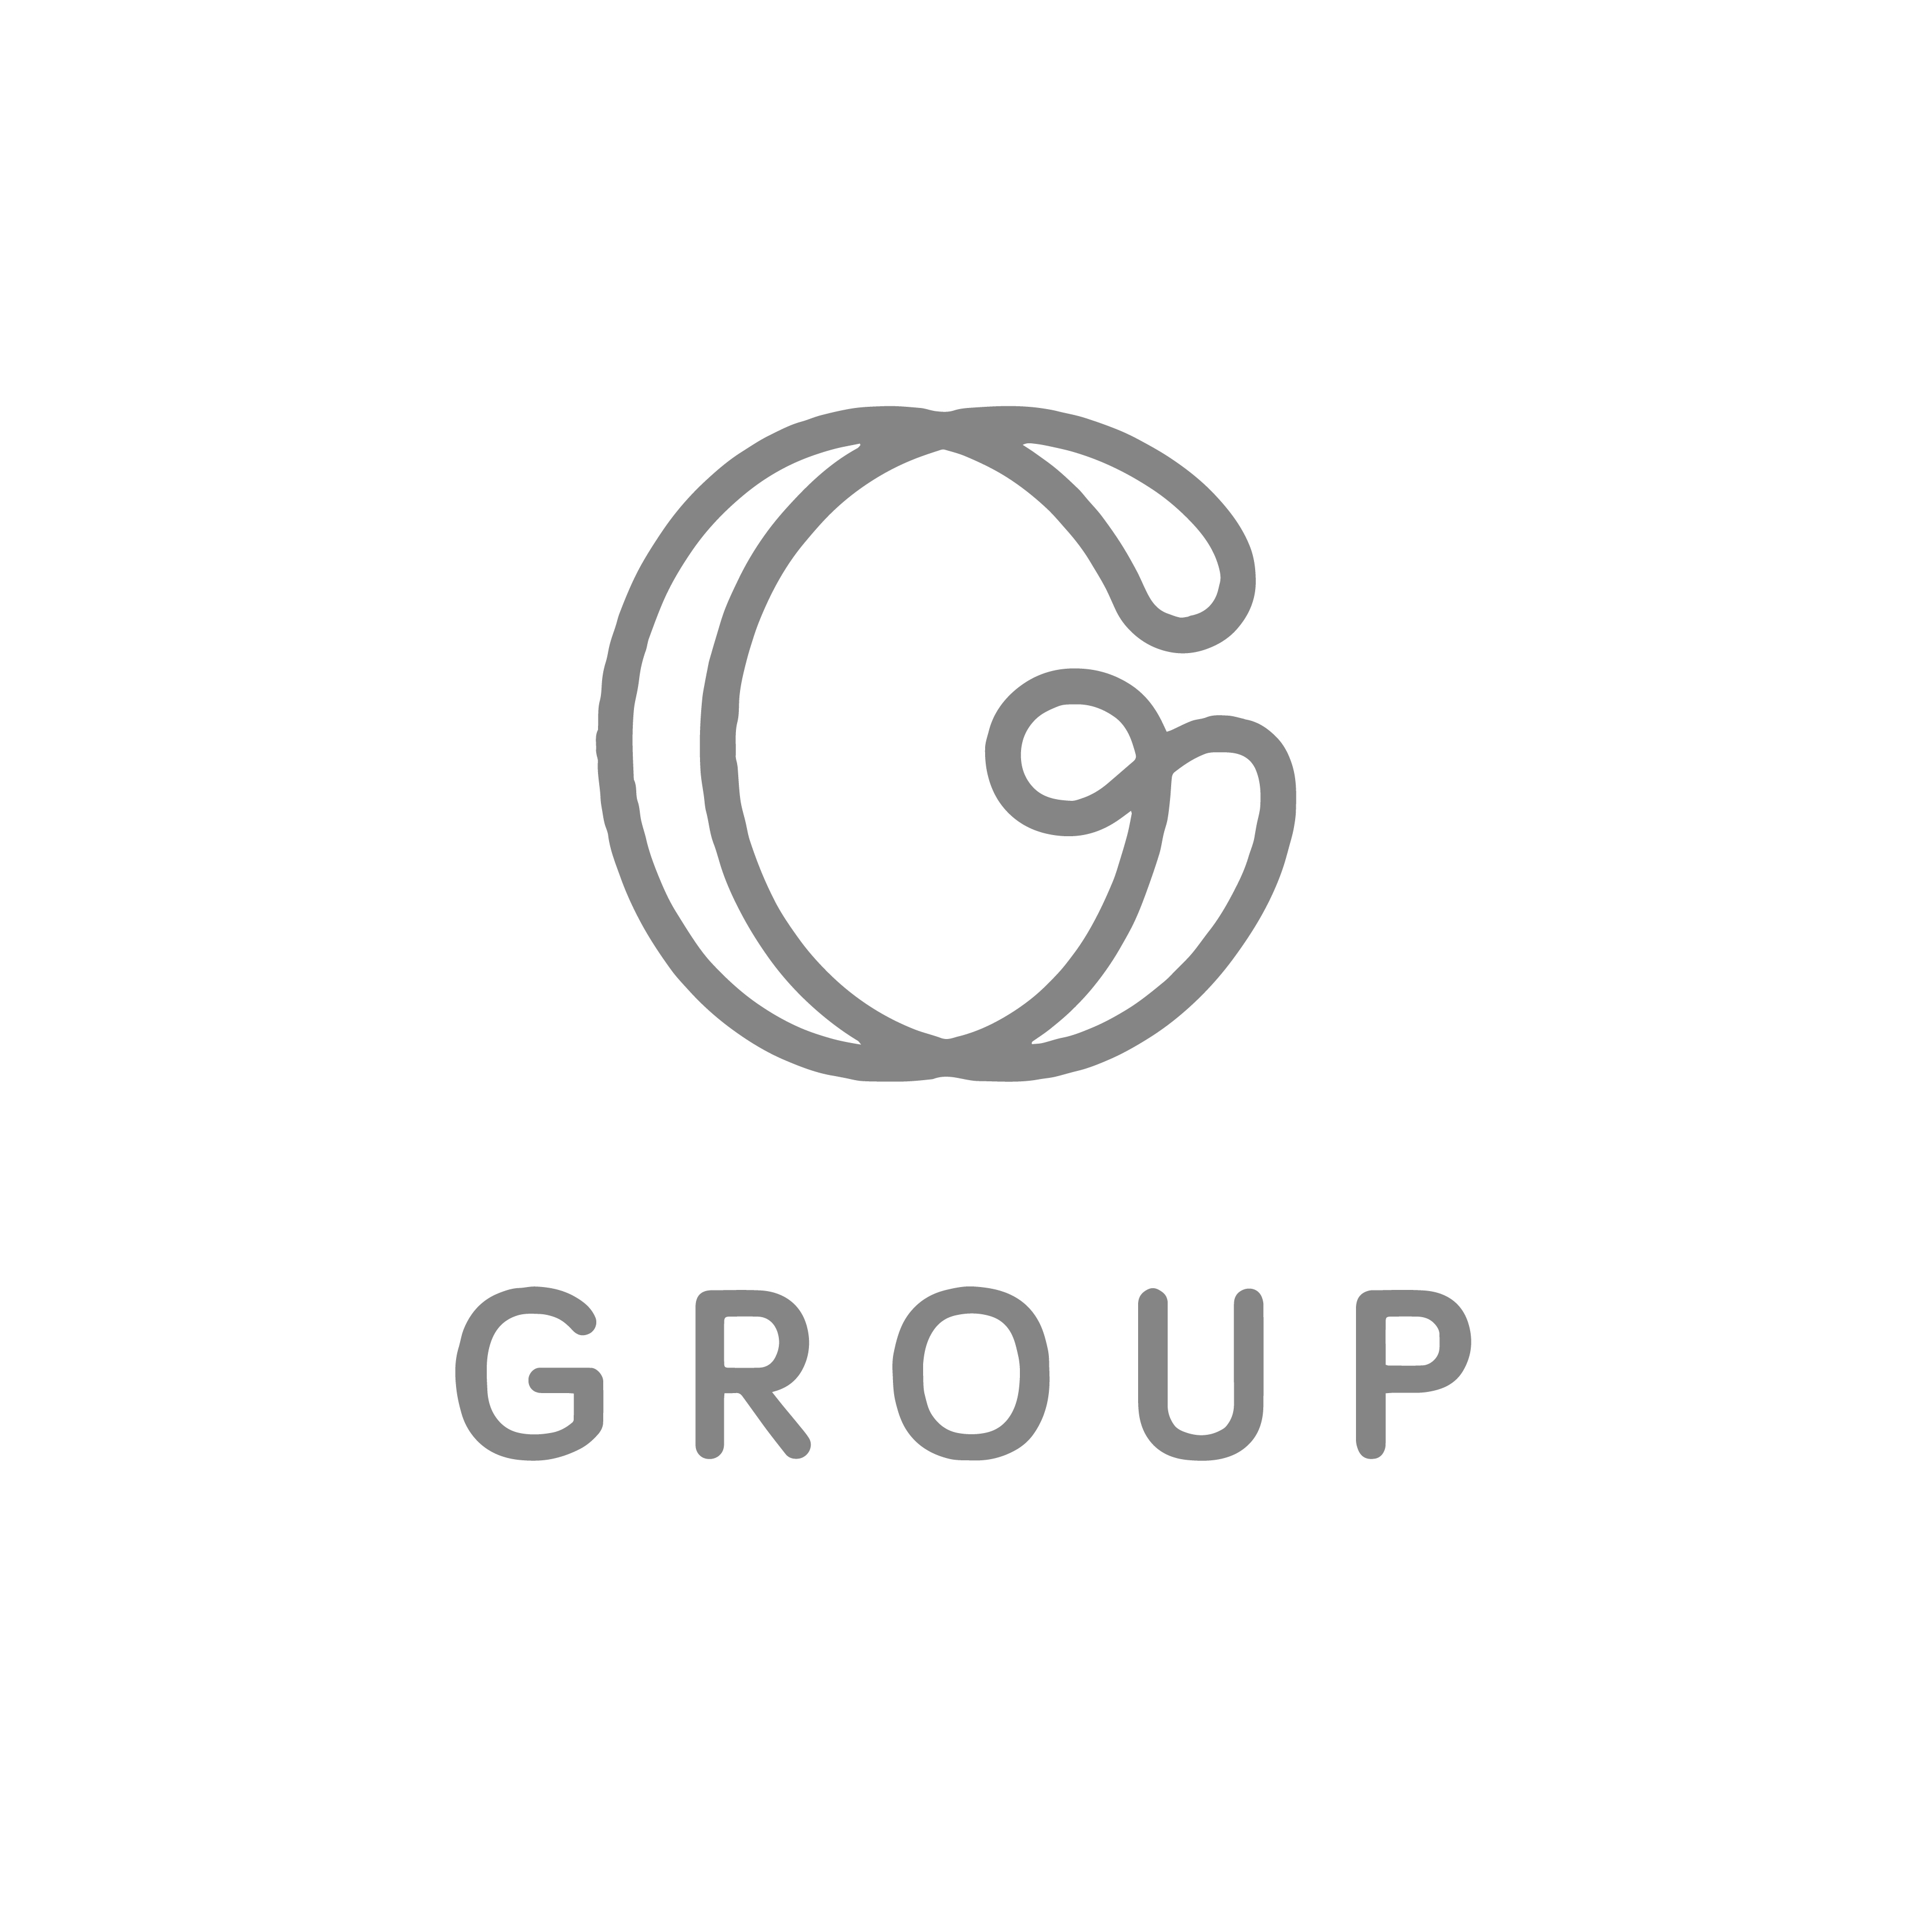 Logos jean agencia de publicidad y marketing G group